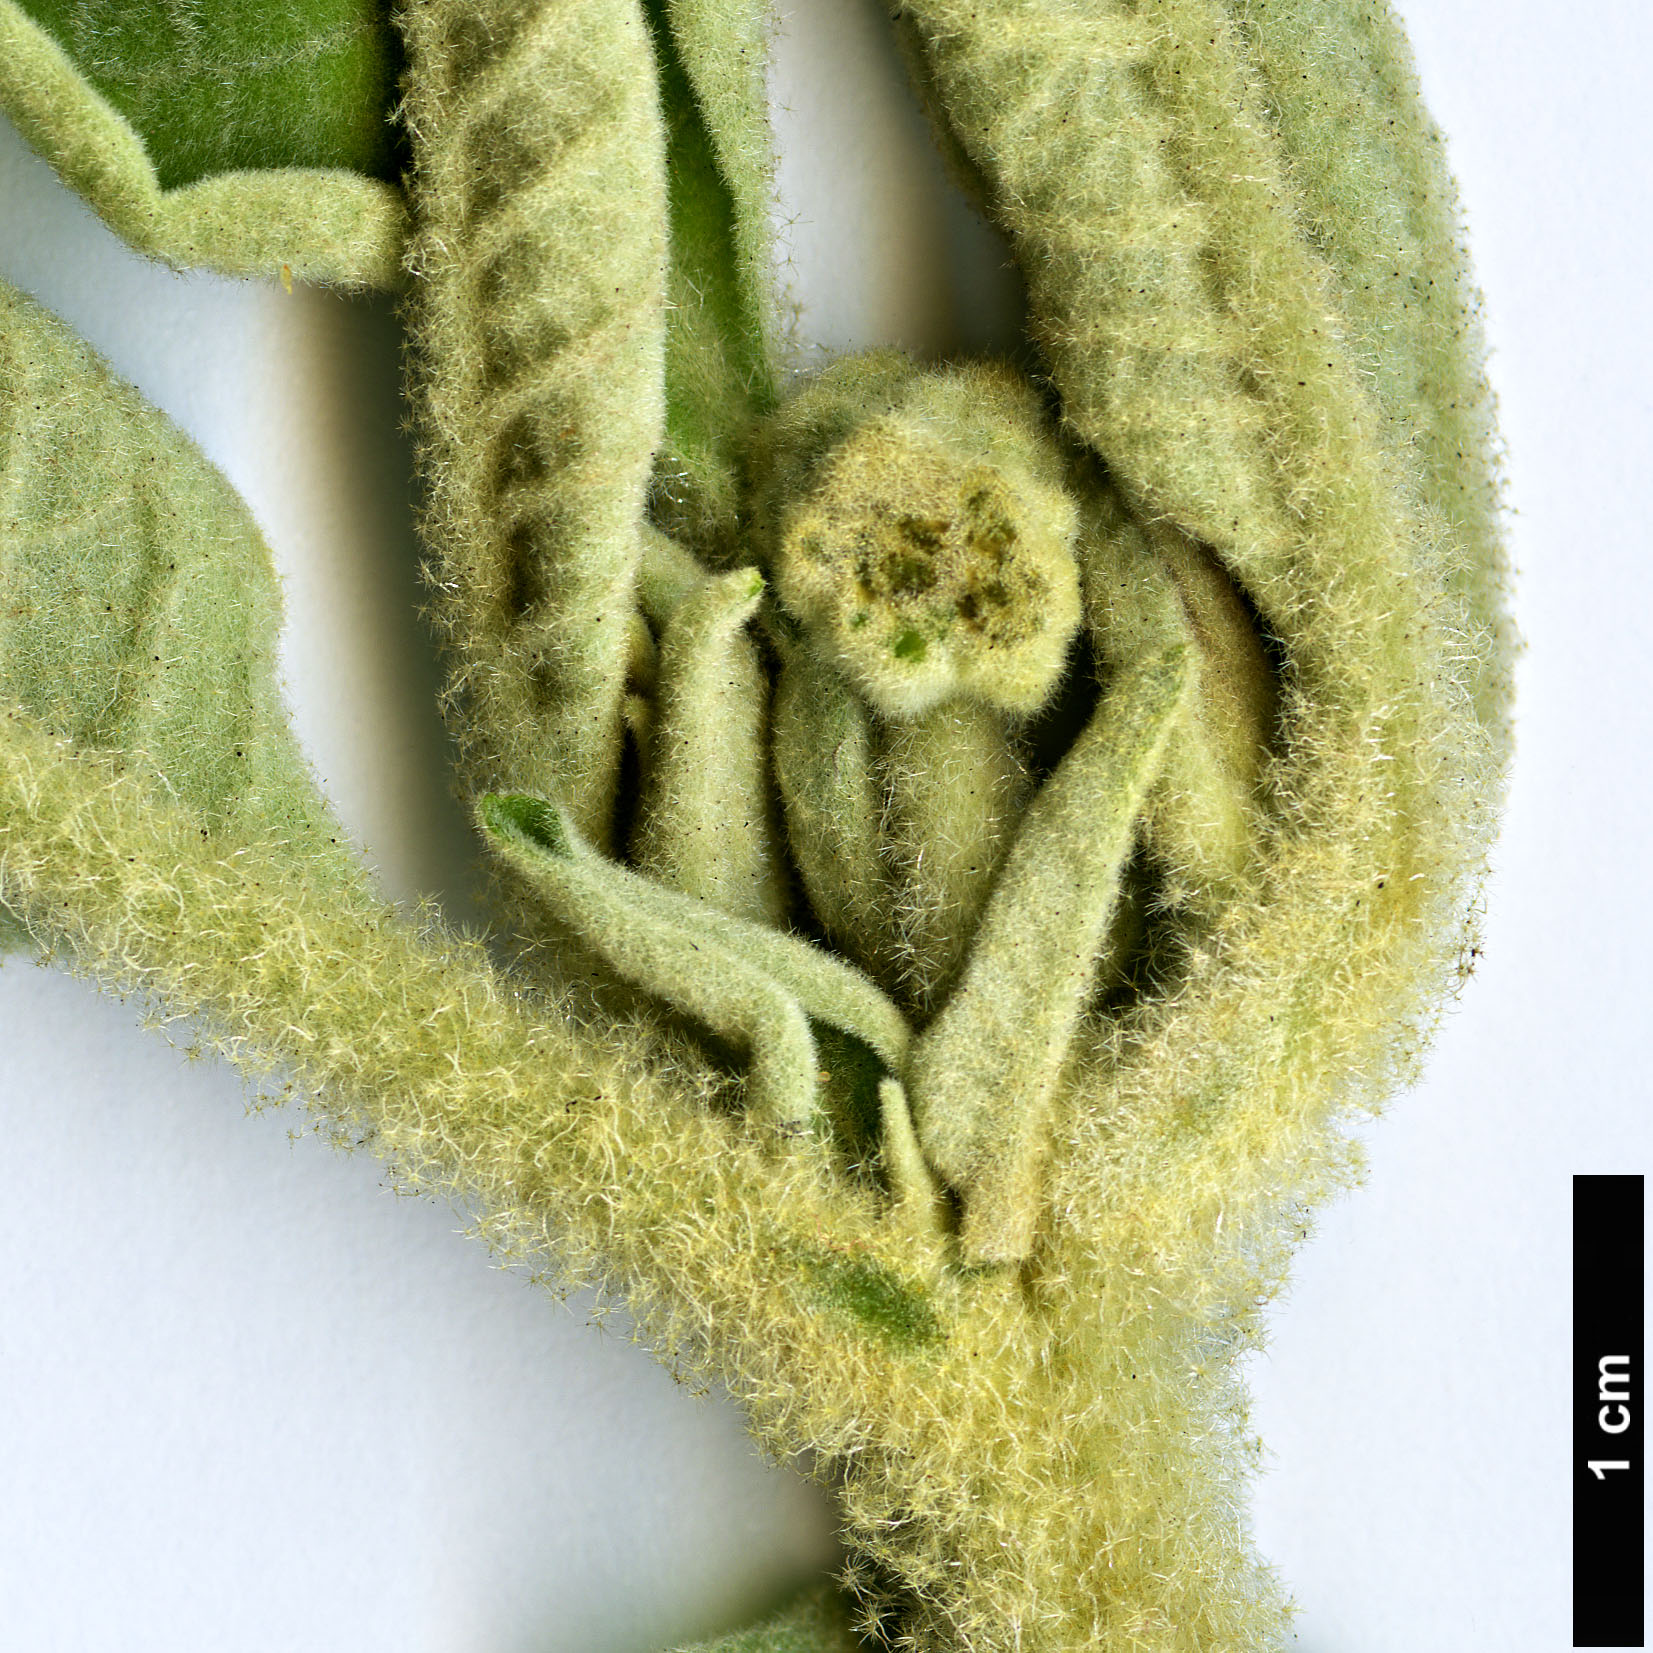 High resolution image: Family: Solanaceae - Genus: Solanum - Taxon: mauritianum